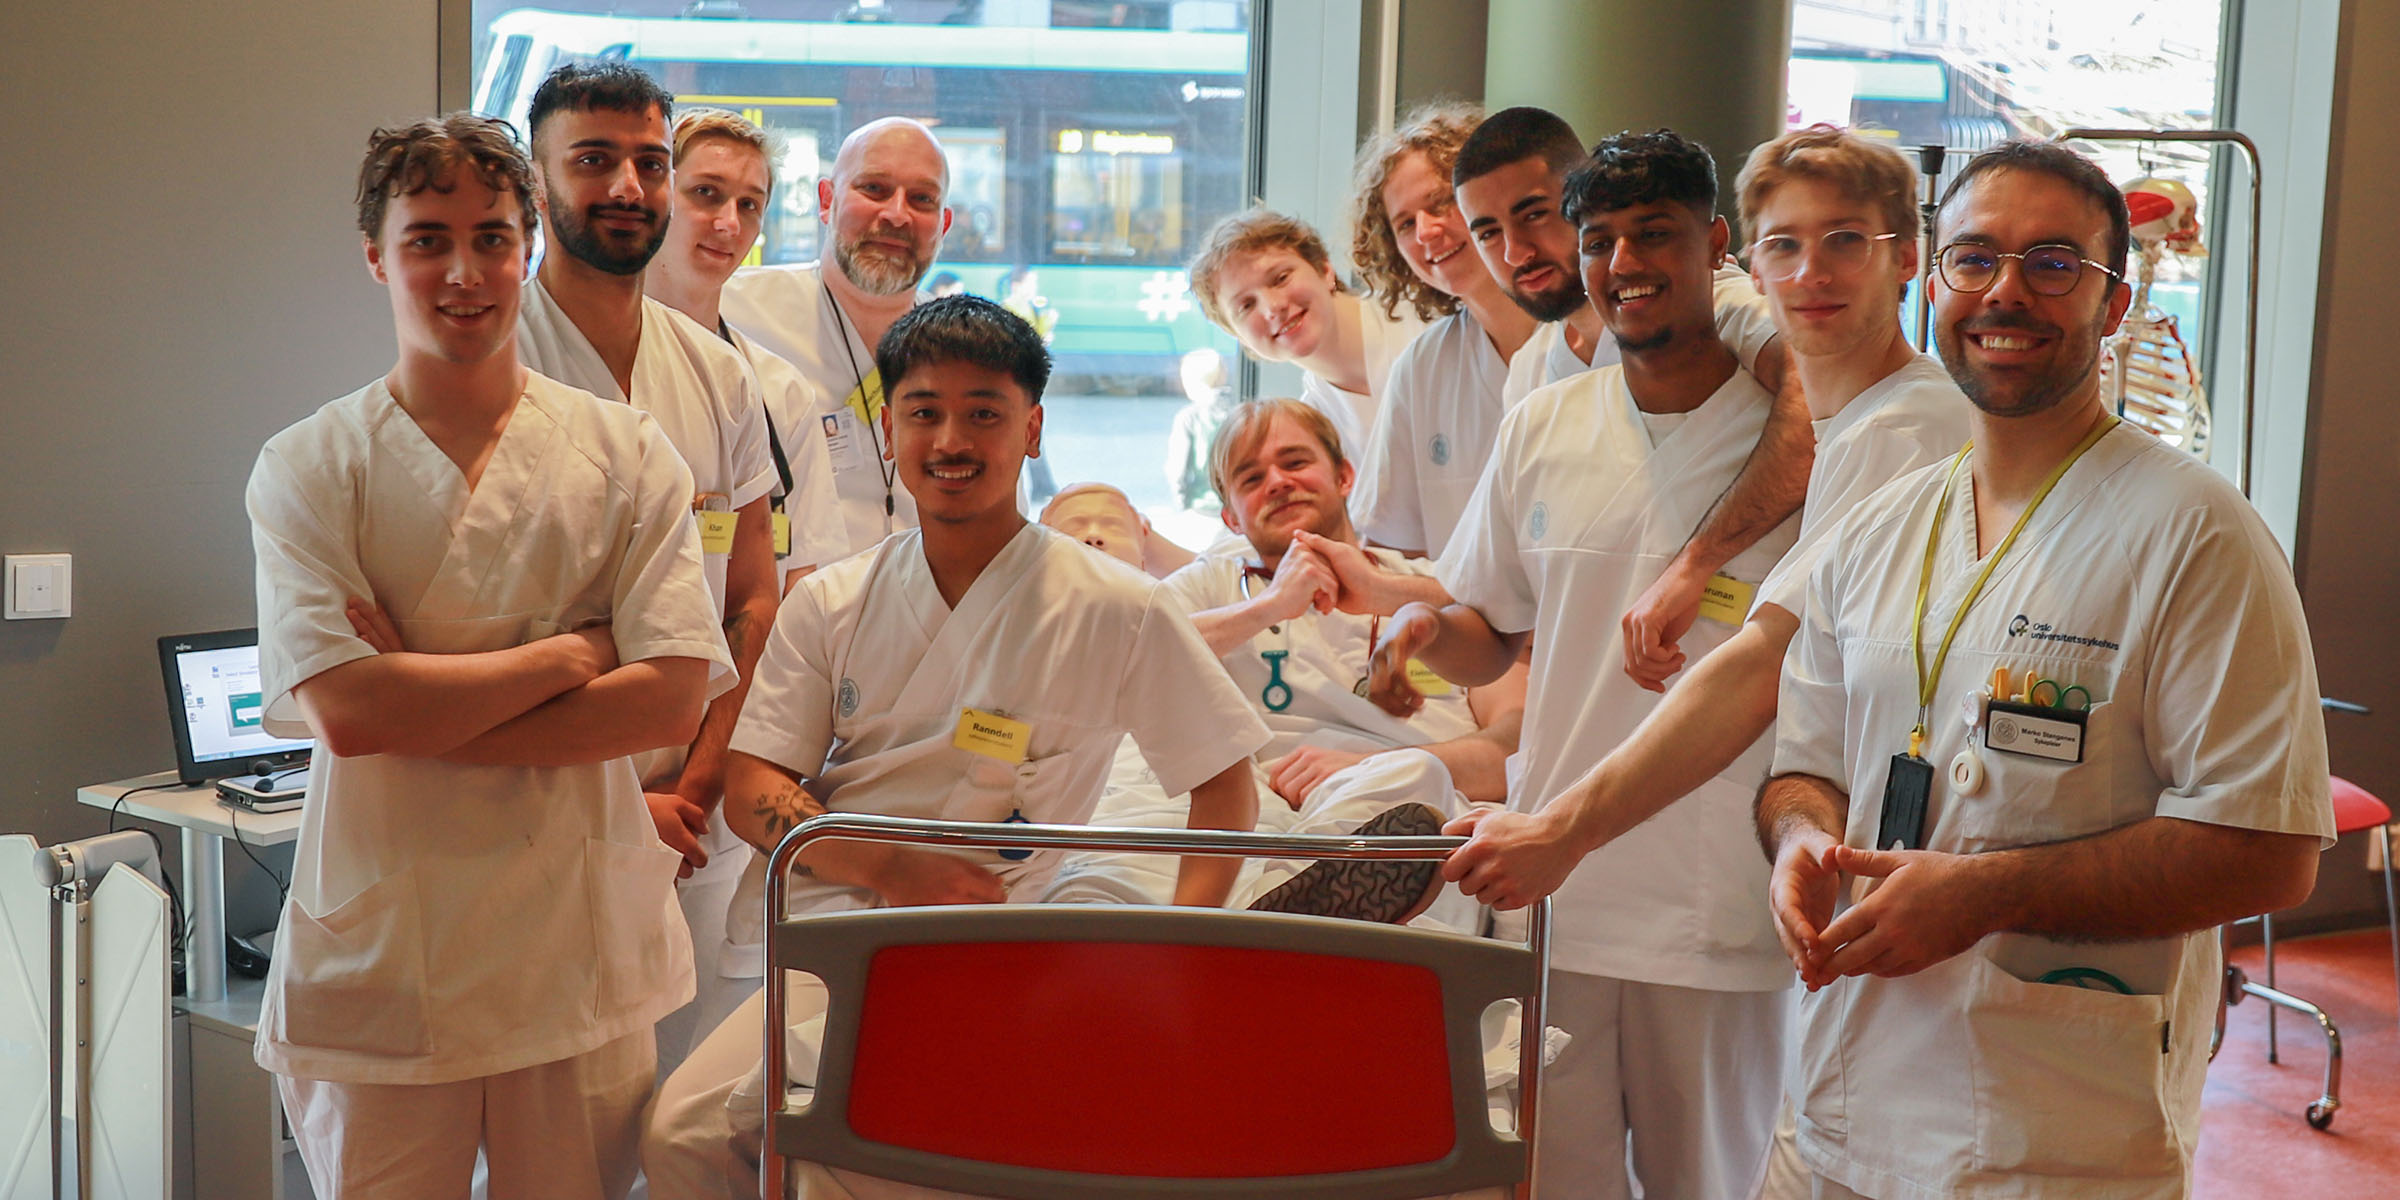 En gruppe menn i sykepleieruniform står vendt mot kamers rundt en sykeseng.